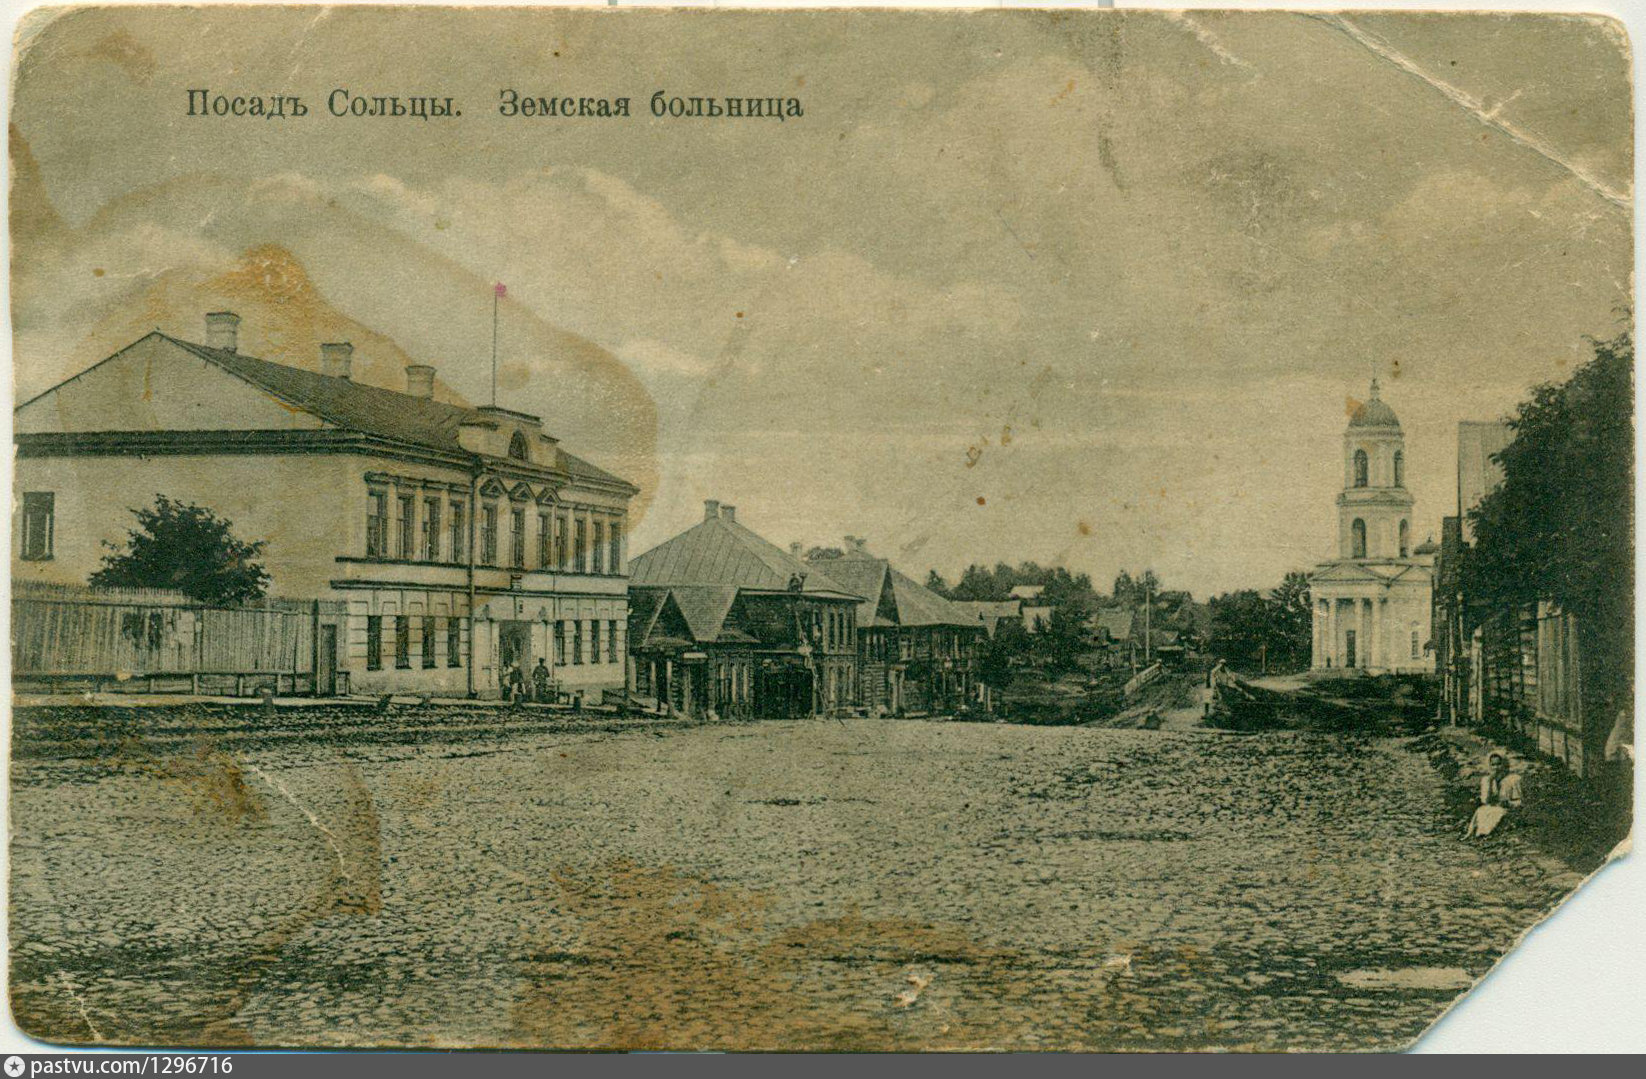 Московская Земская больница 19 век